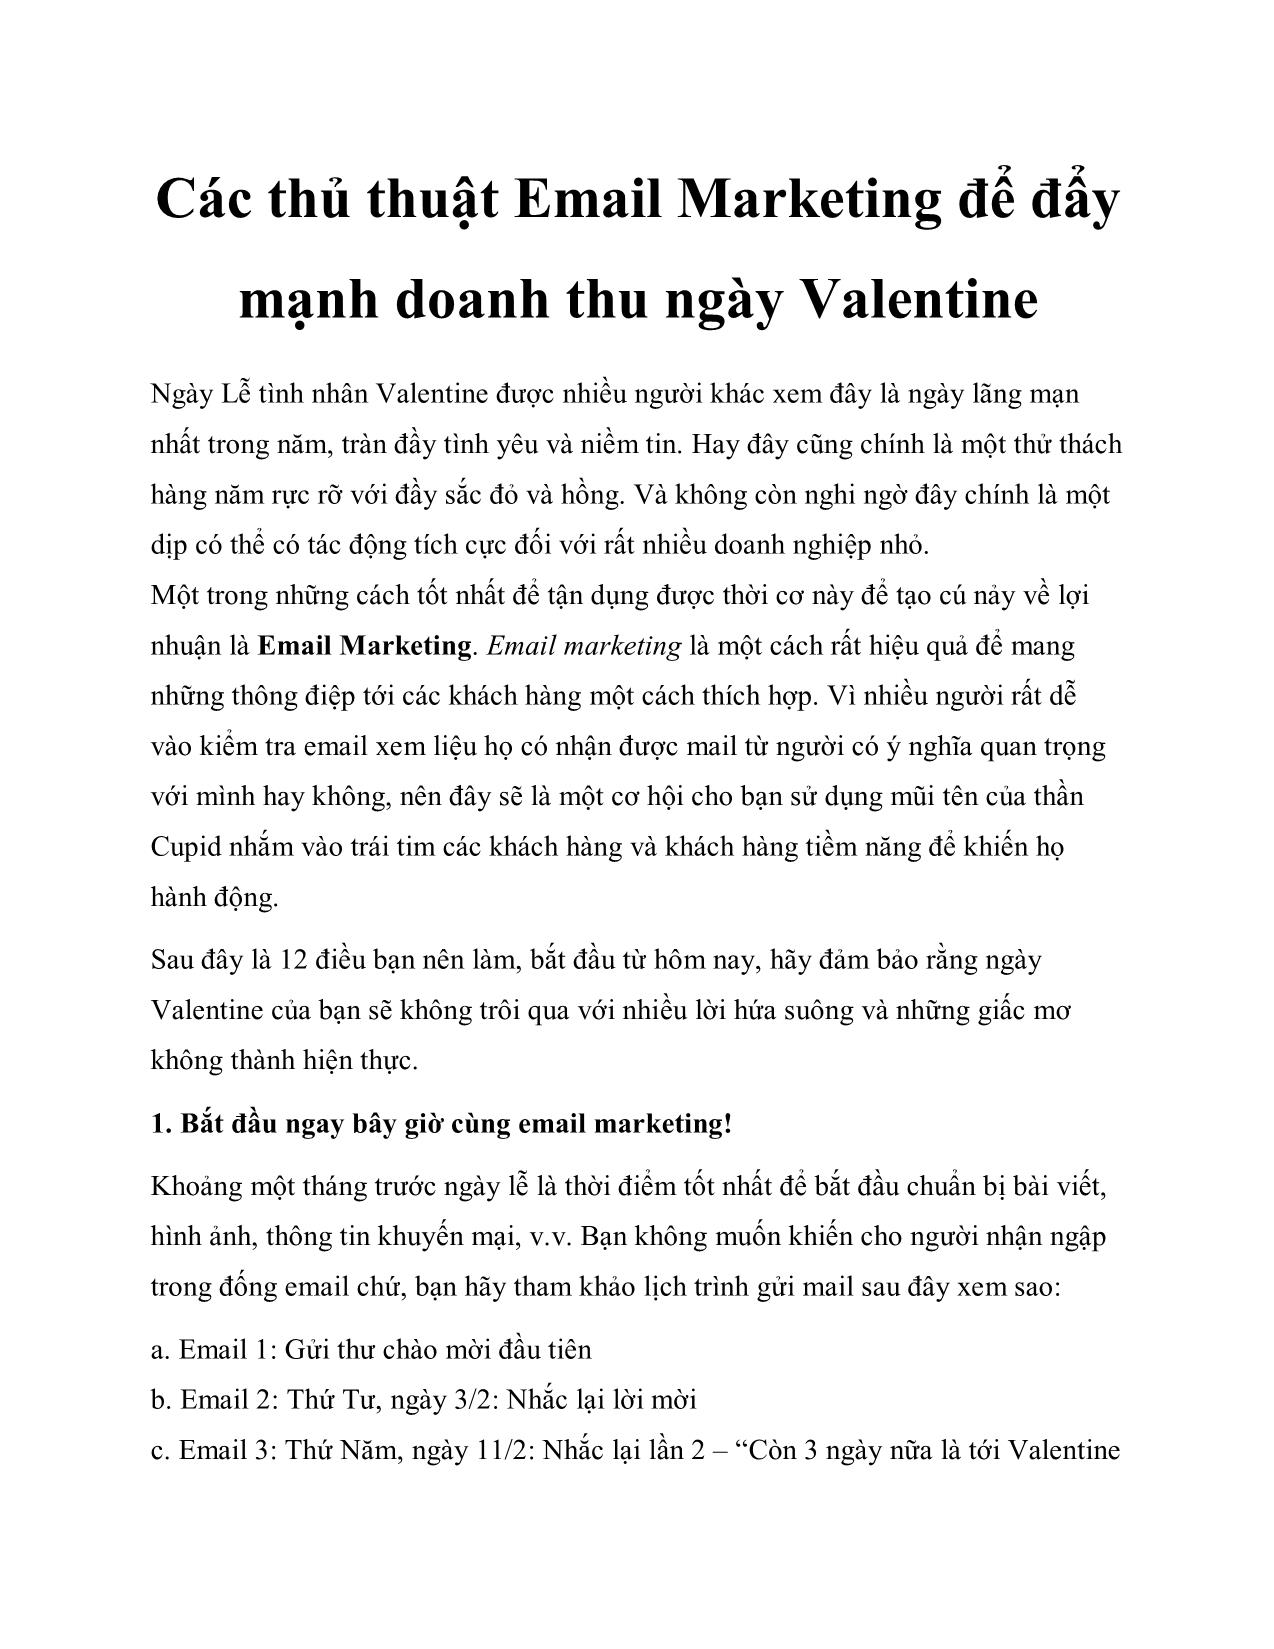 Các thủ thuật Email Marketing để đẩy mạnh doanh thu ngày Valentine trang 1